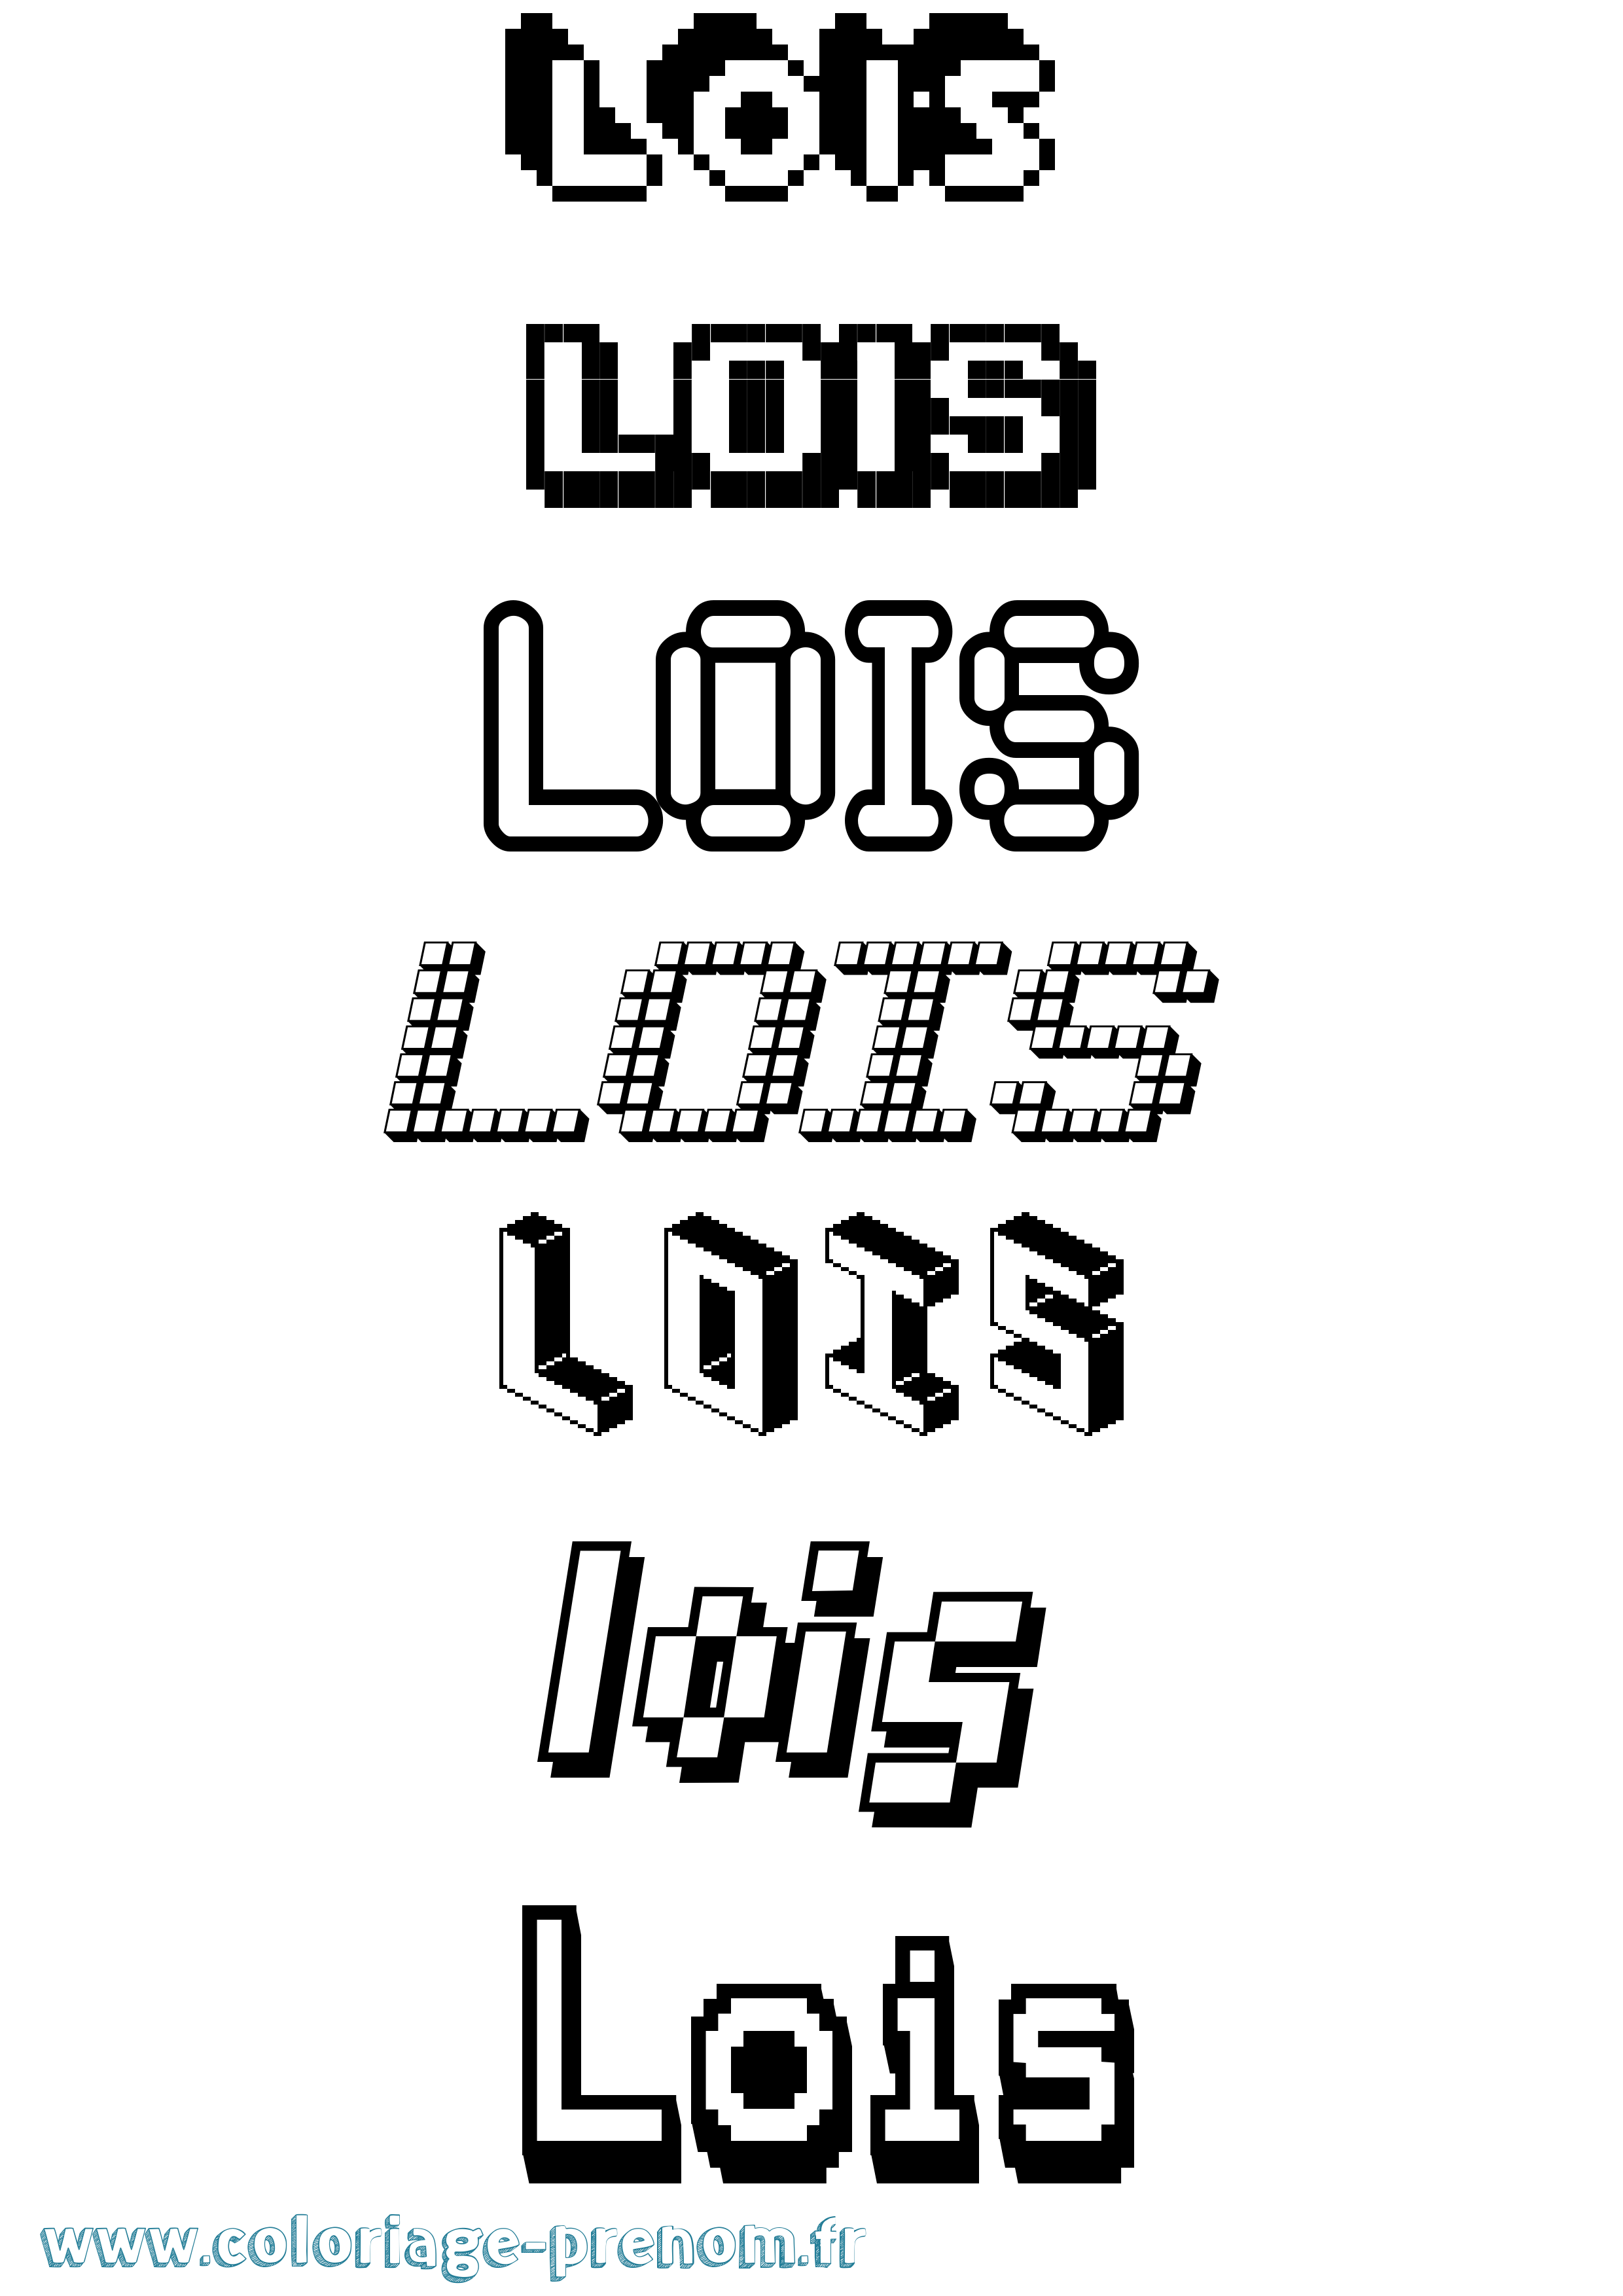 Coloriage prénom Lois Pixel